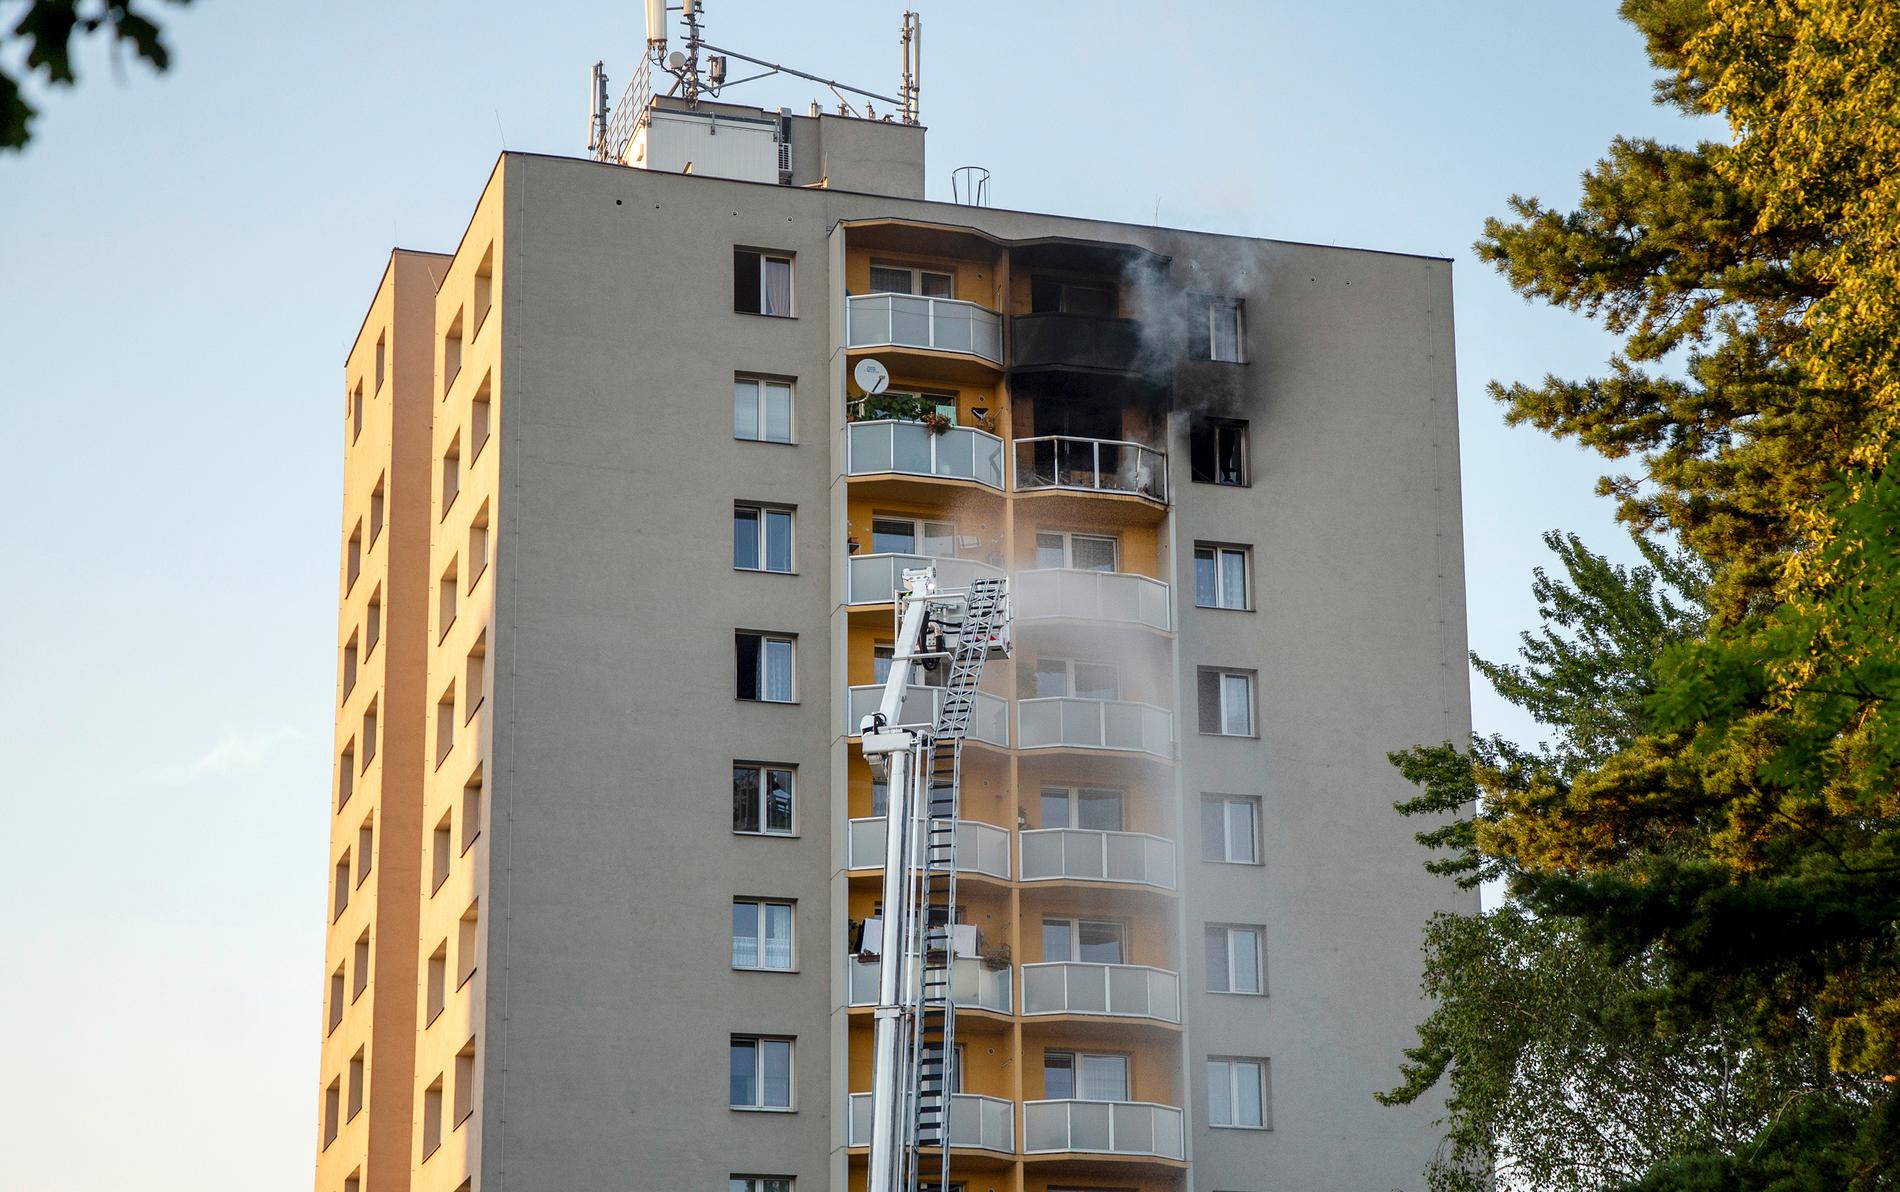 Elva människor har omkommit i branden i tjeckiska Bohumin.